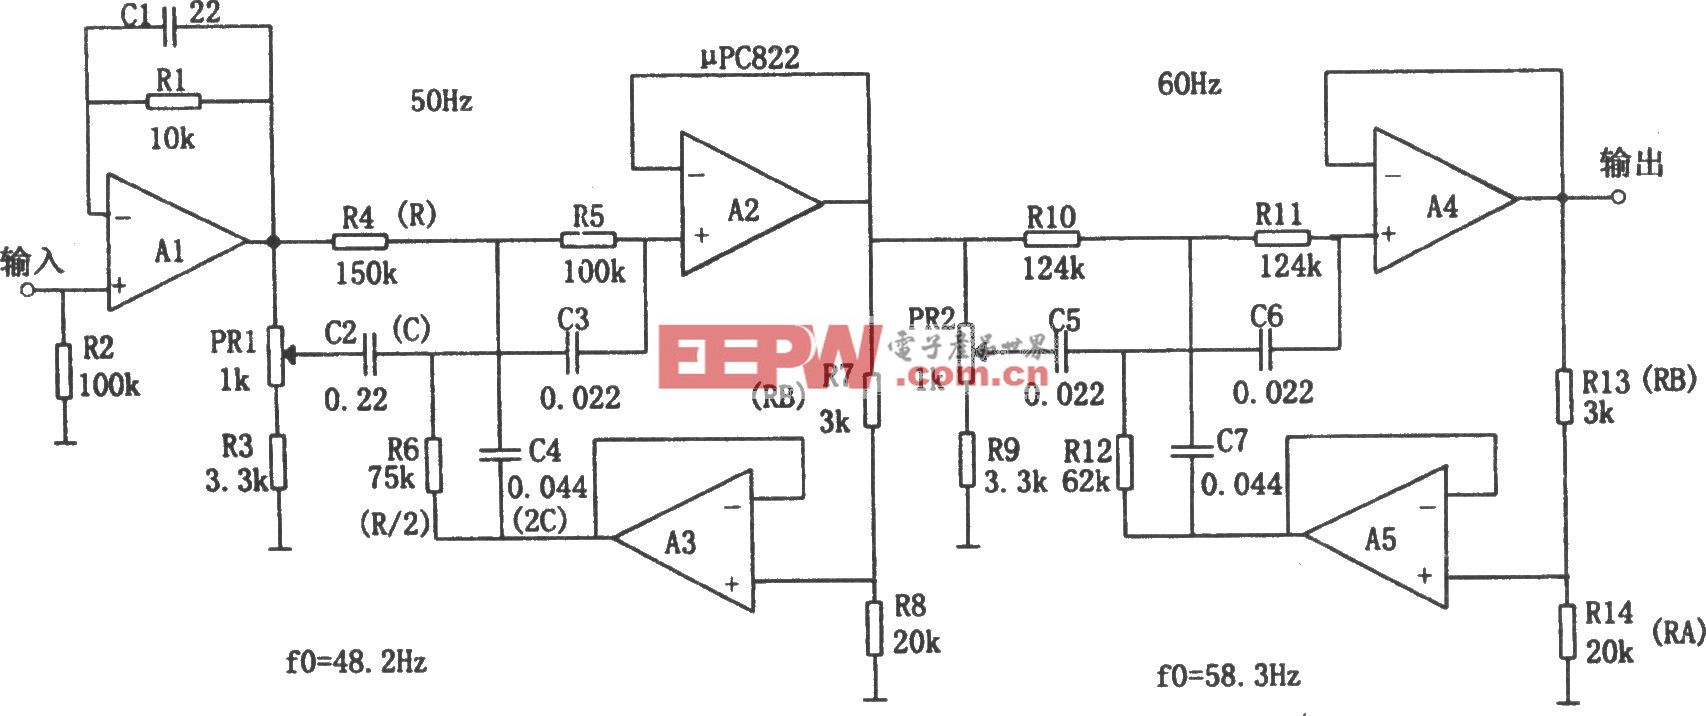 電源頻率噪聲濾波器(μPC822)